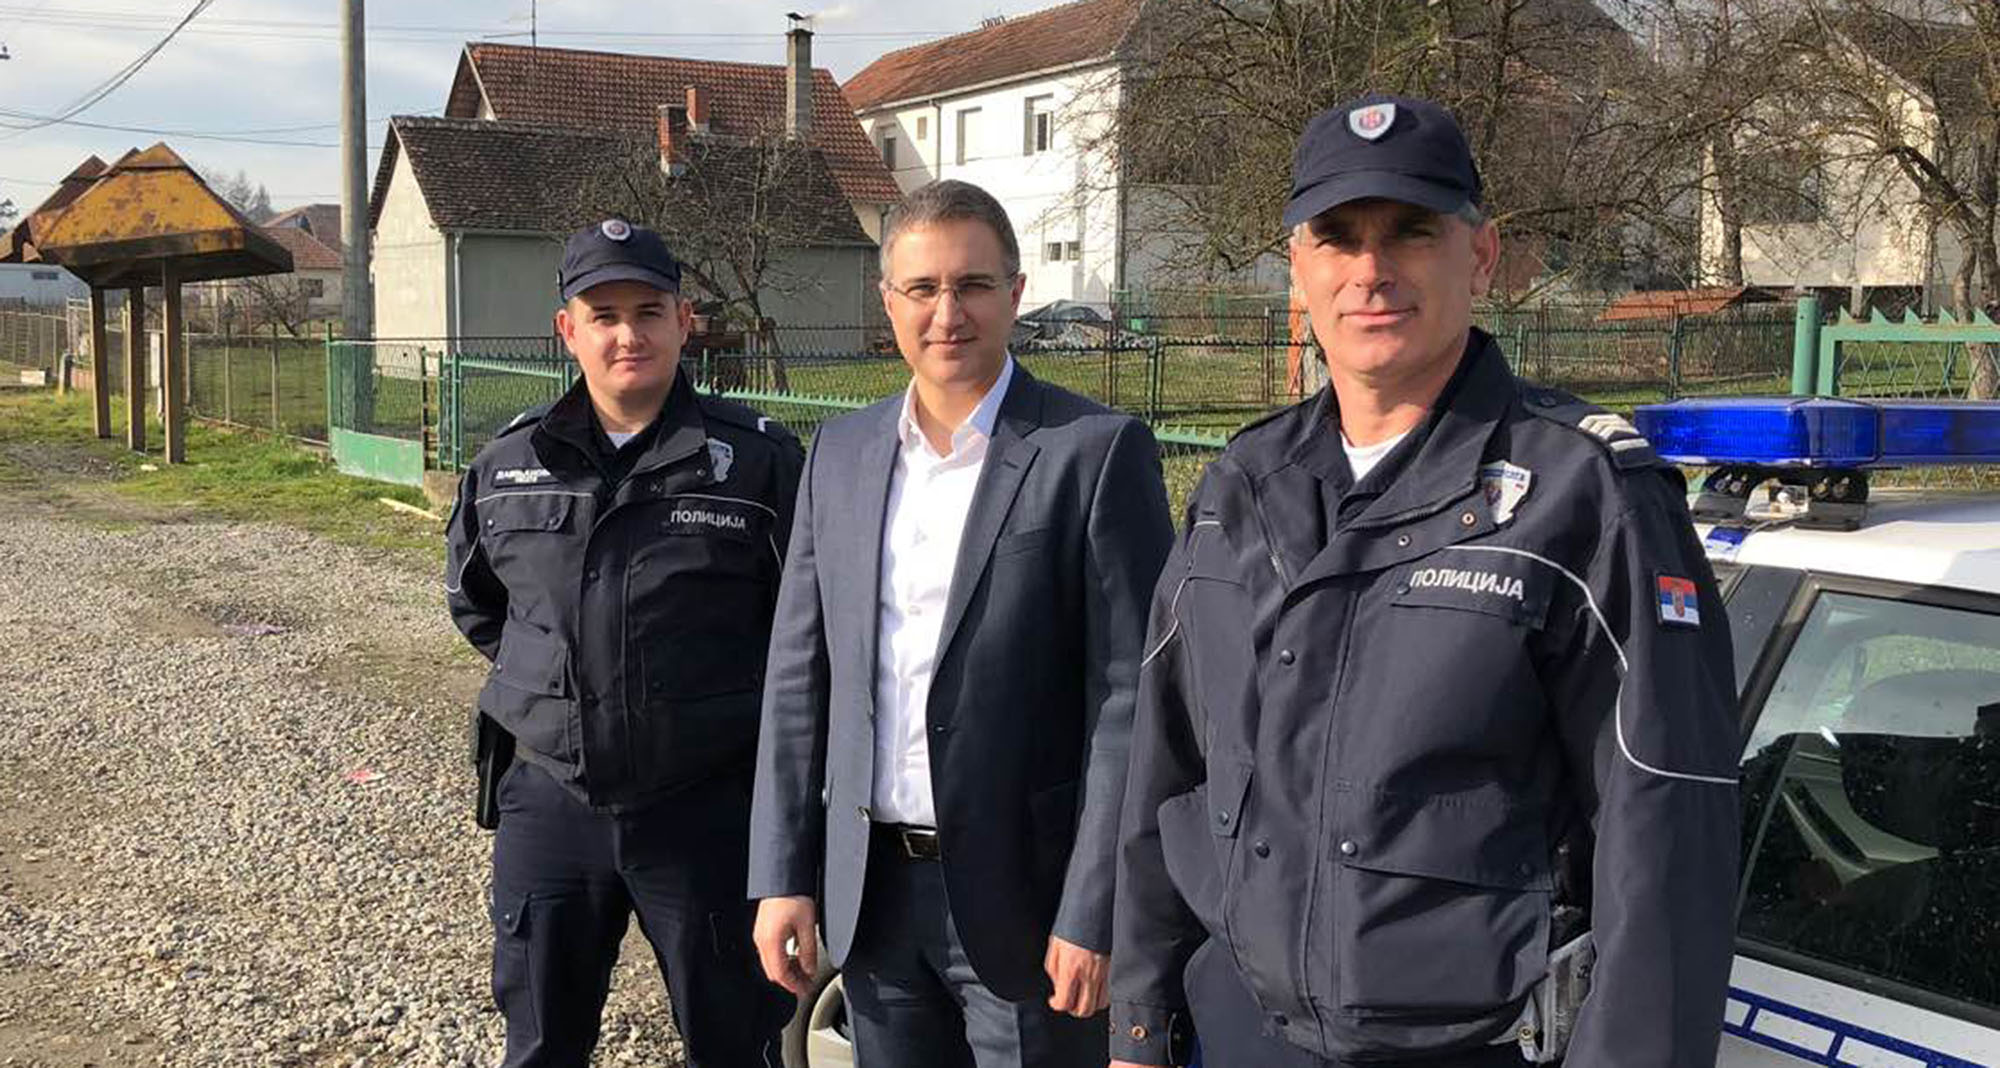 Ministar Stefanović obišao je jednu od patrola saobraćajne policije